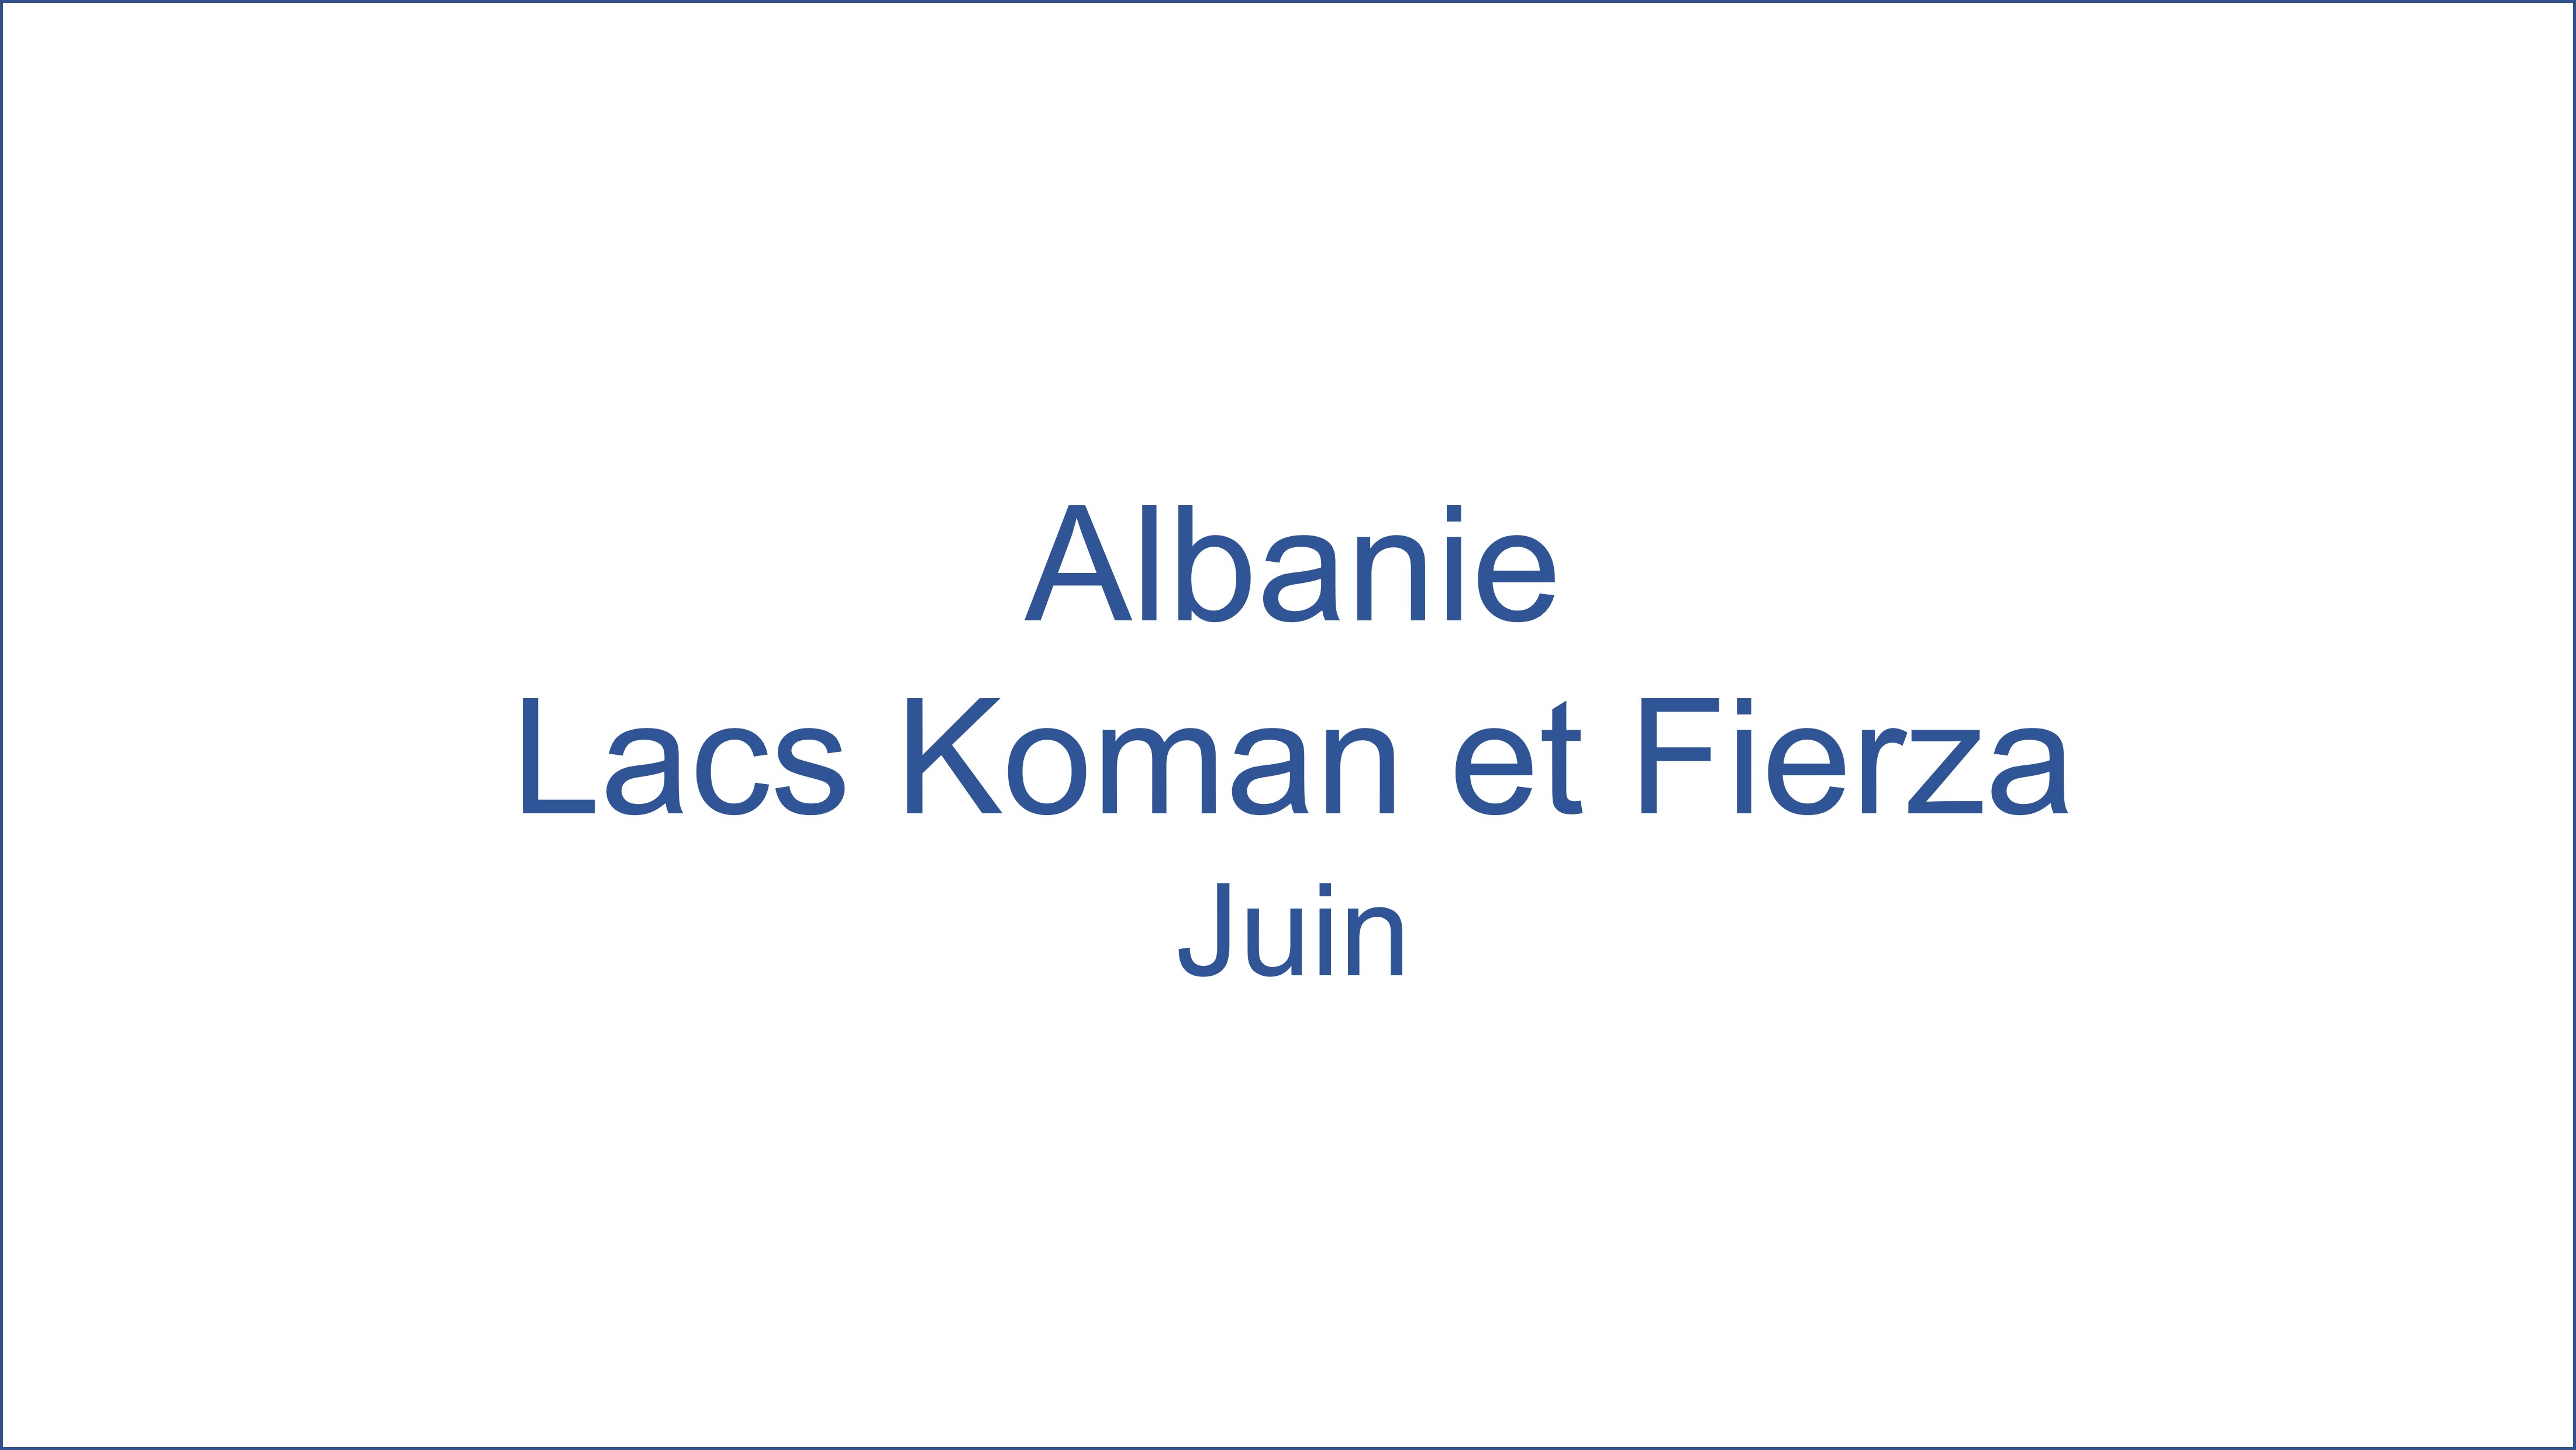 Albanie - Lacs Koman et Fierza 06/2022